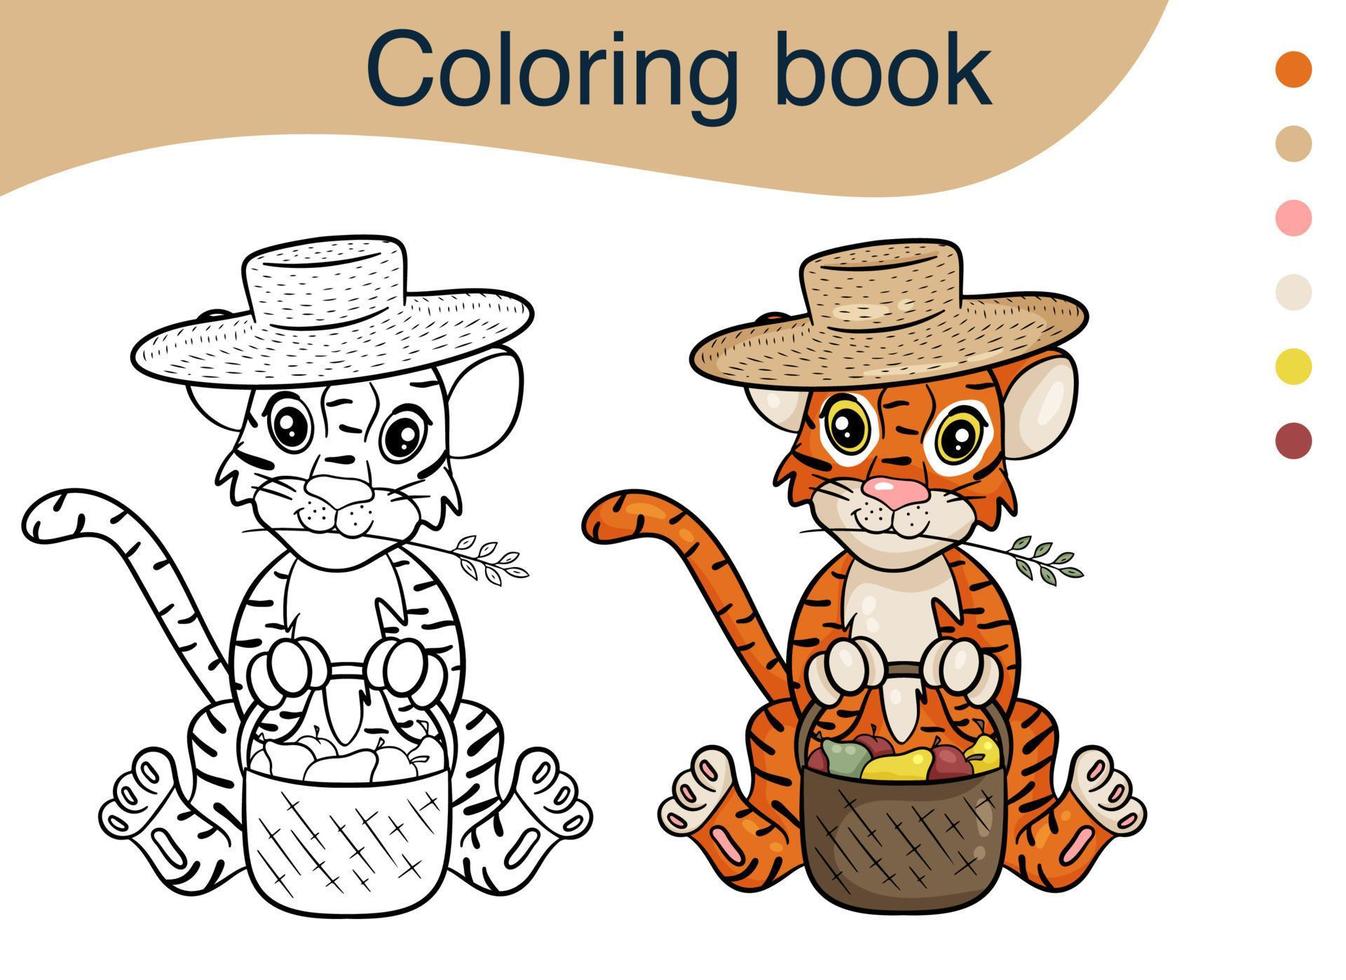 tijger. illustratie voor een kleurboek. het symbool van het nieuwe jaar volgens de chinese kalender. vector cartoon stijl.